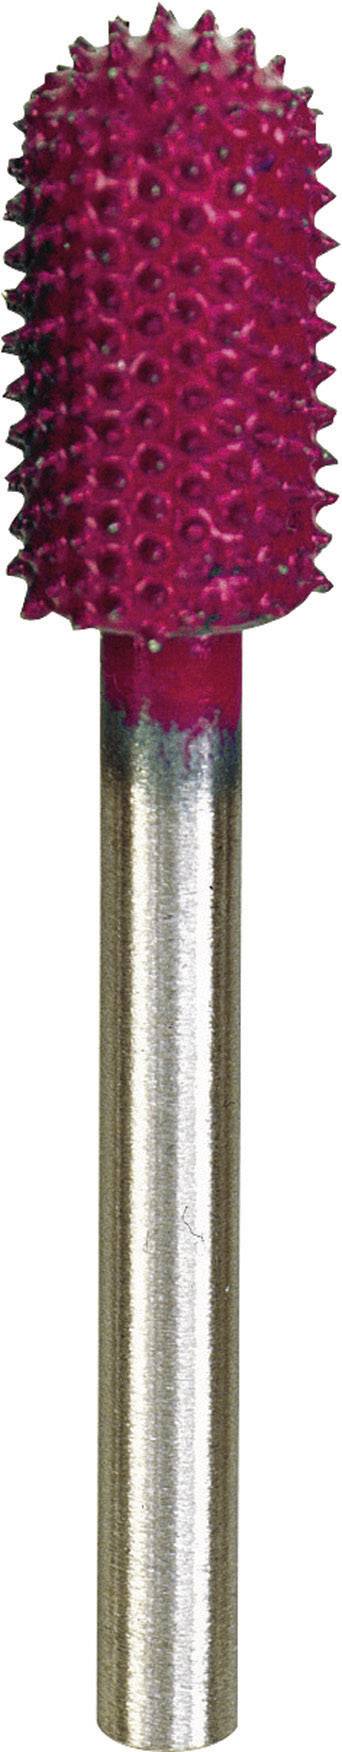 PROXXON Raspelfräser Proxxon Micromot 29 060 Kugel-Durchmesser 7.5 mm Wolfram-Karbit Schaft-Ø 3.2 mm